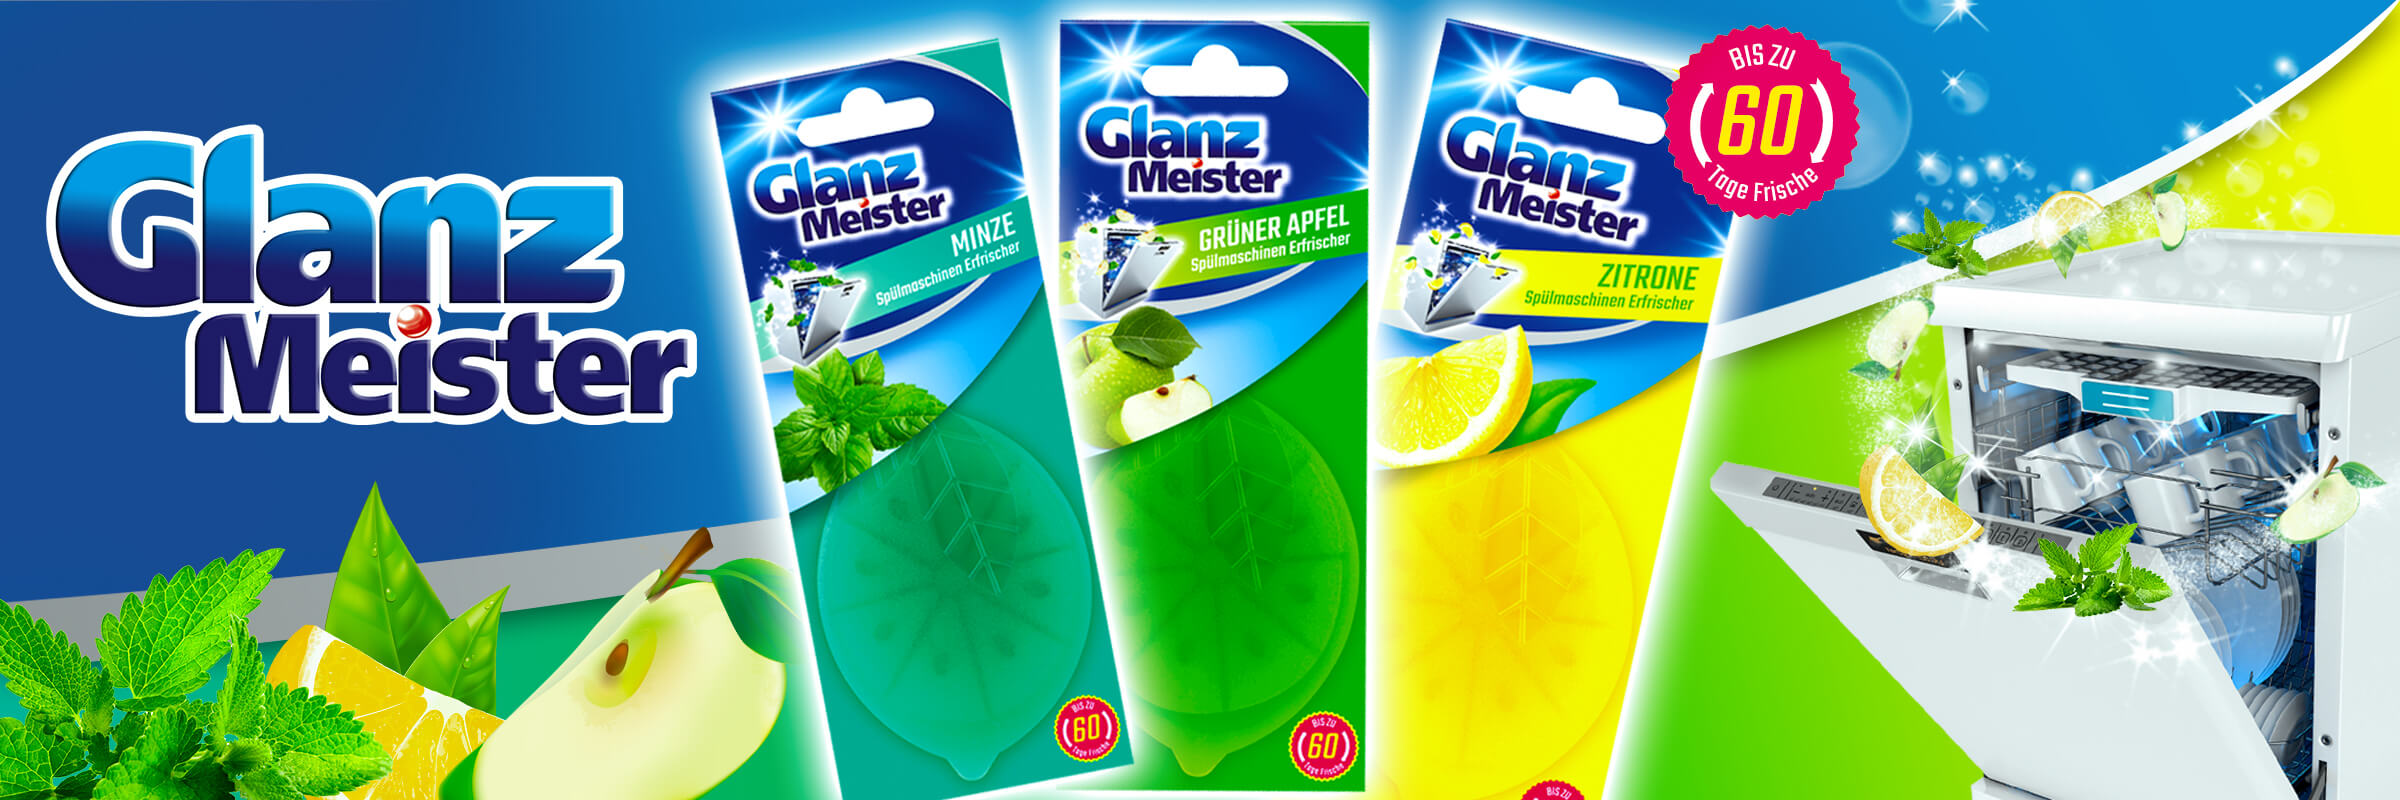 New product - GlanzMeister dishwasher freshener